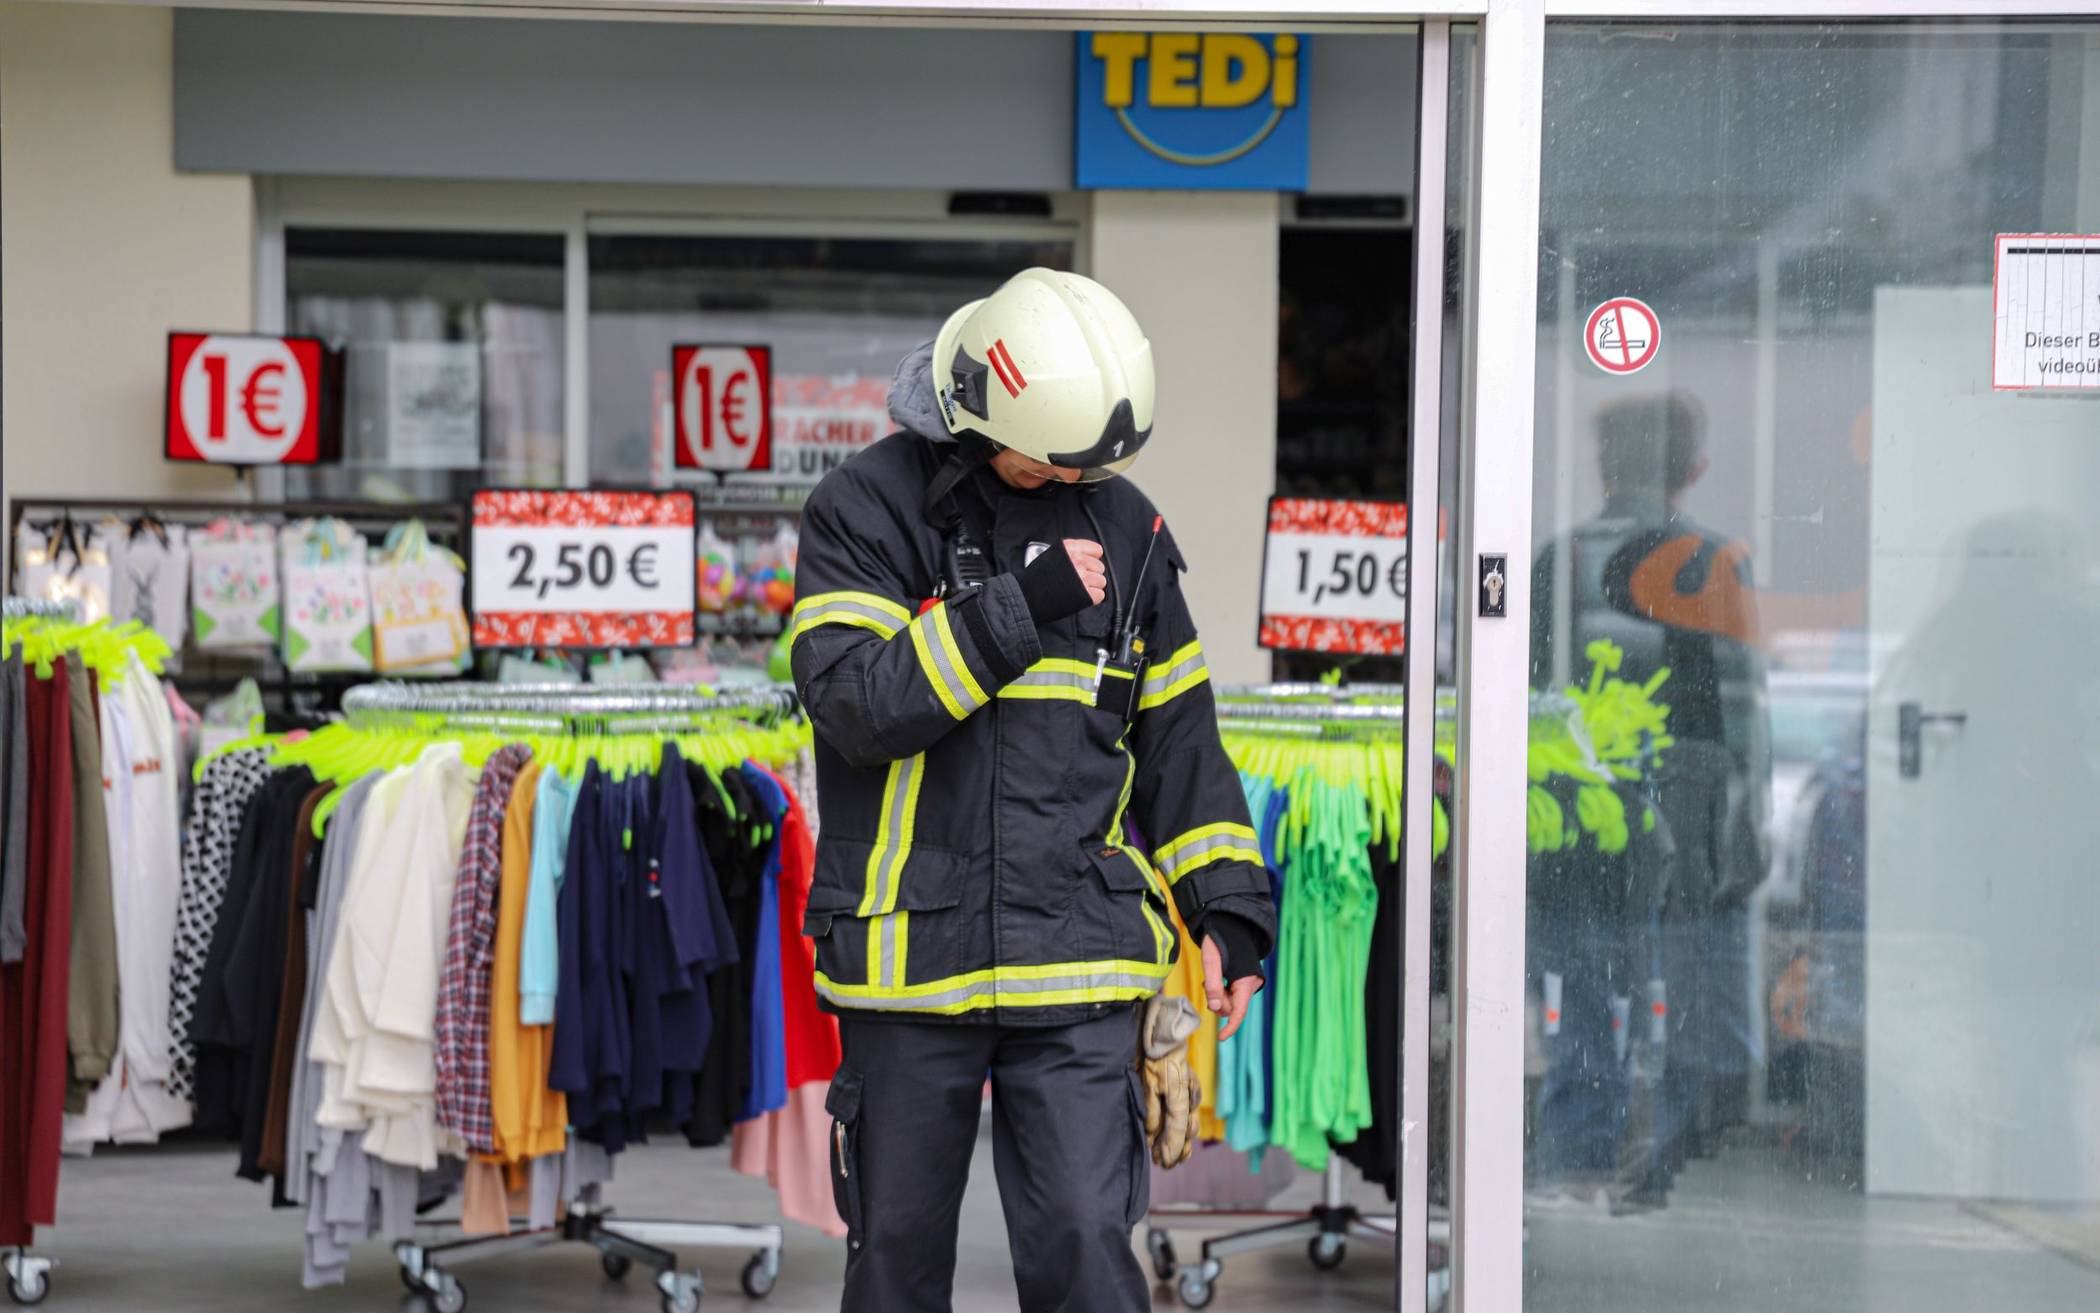 Feuerwehr-Einsatz in Wuppertaler Textil-Discounter​